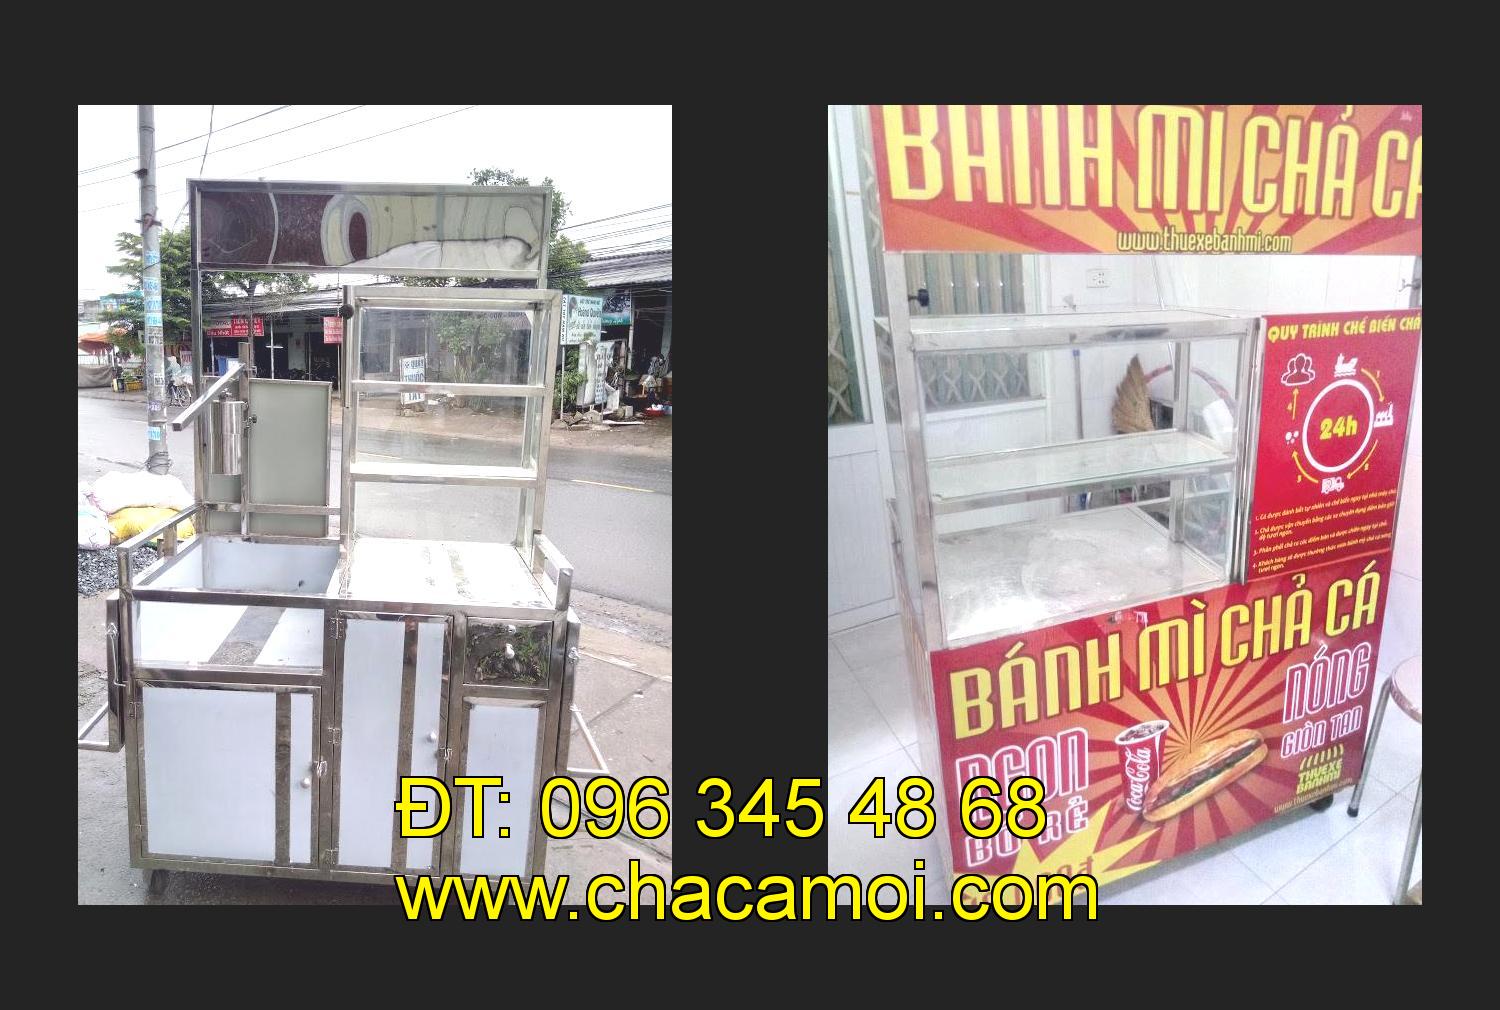 xe bánh mì chả cá inox tại tỉnh Hồ Chí Minh